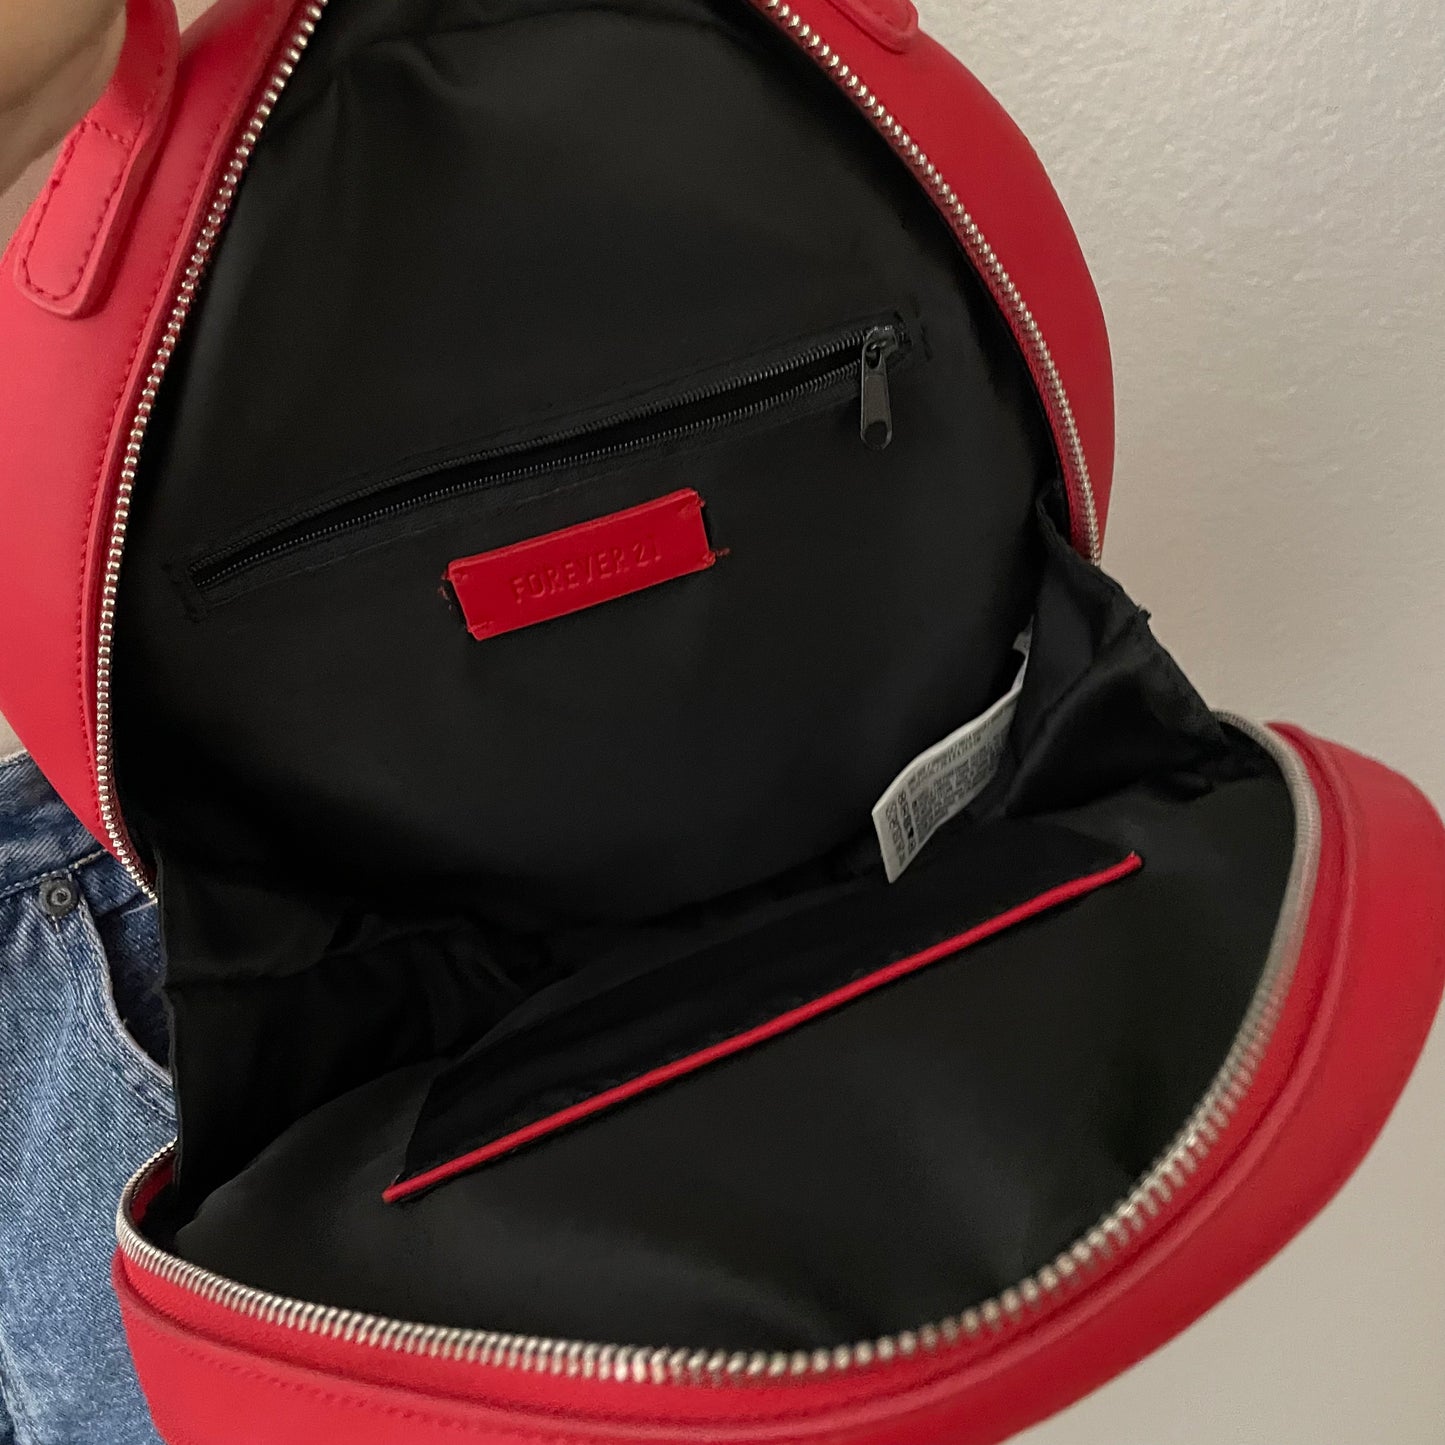 Retro Red Circular Handheld Bag